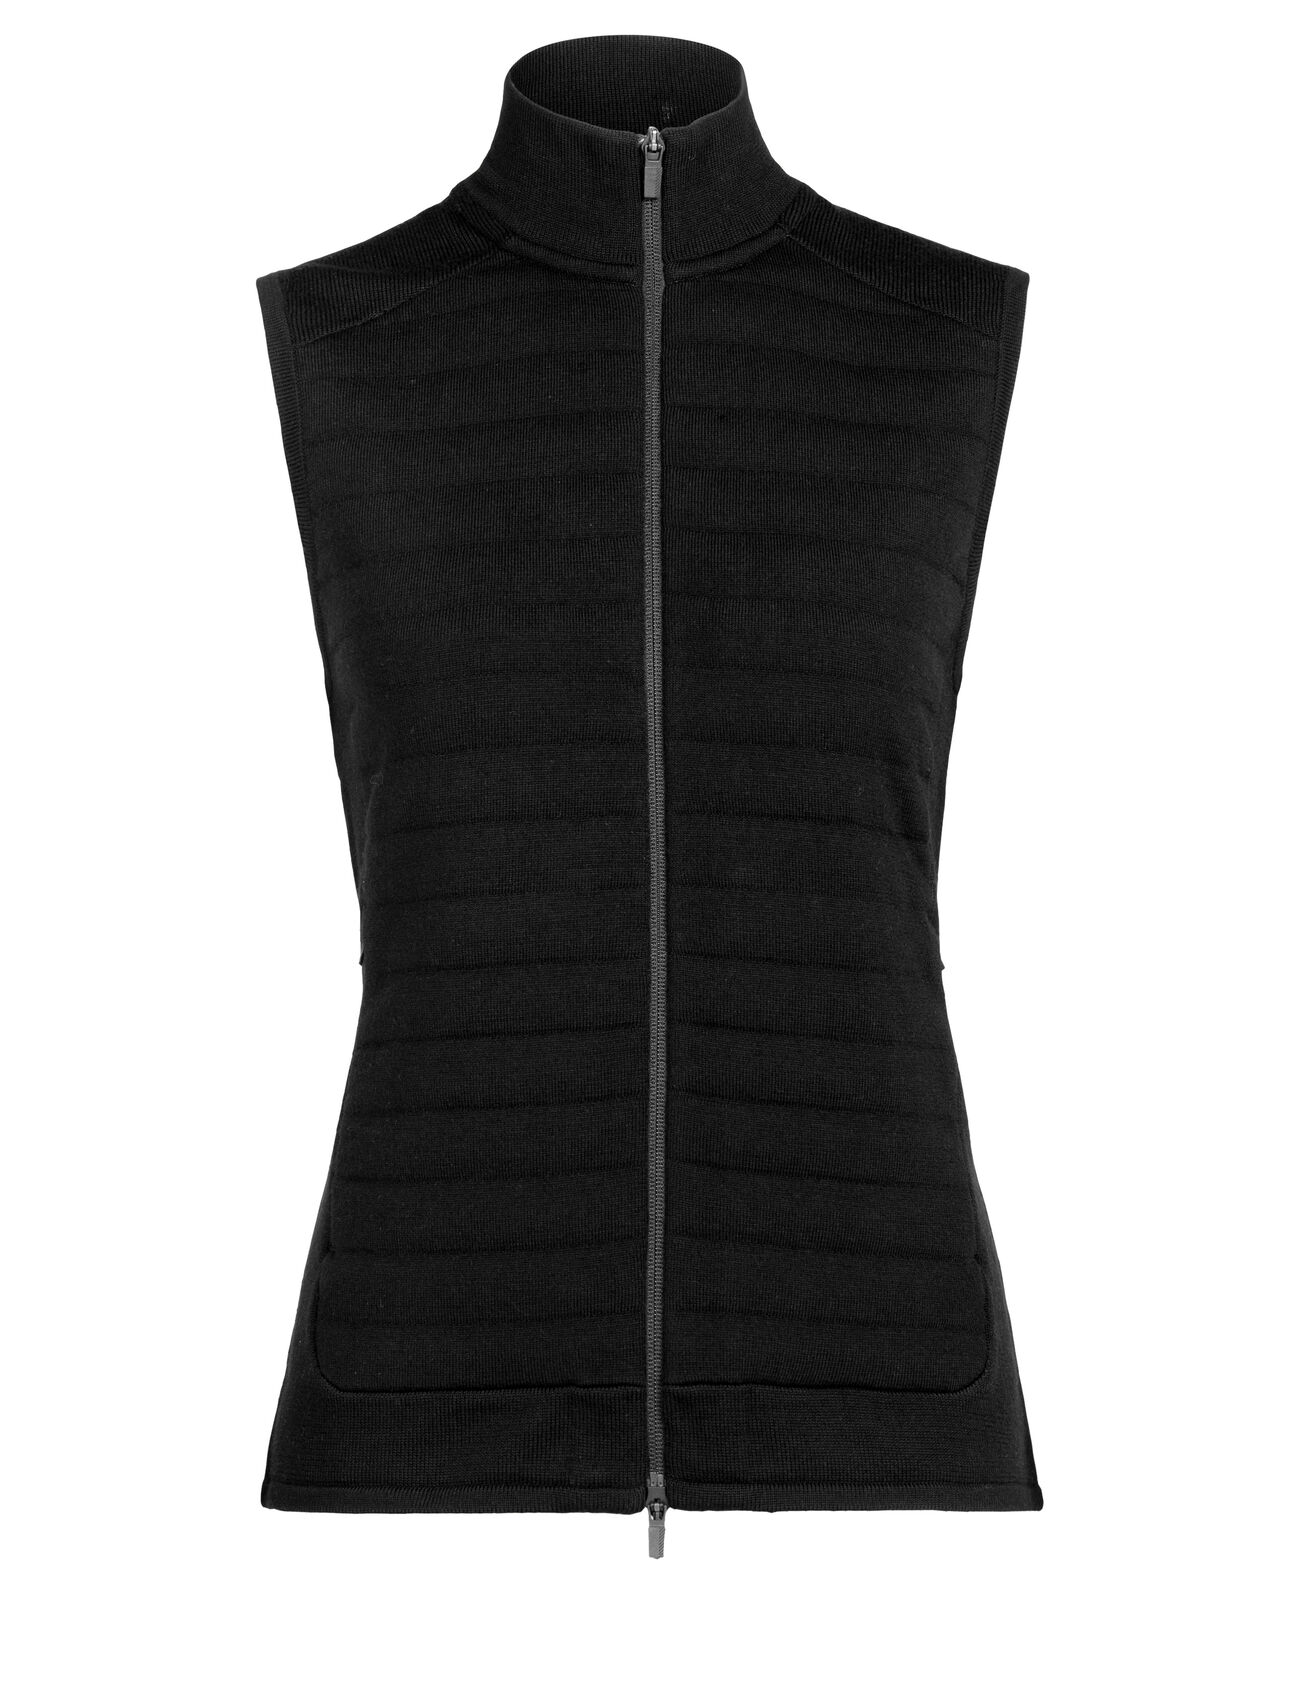 provincie aantrekkelijk Grap ZoneKnit™ Merino Insulated Vest | icebreaker